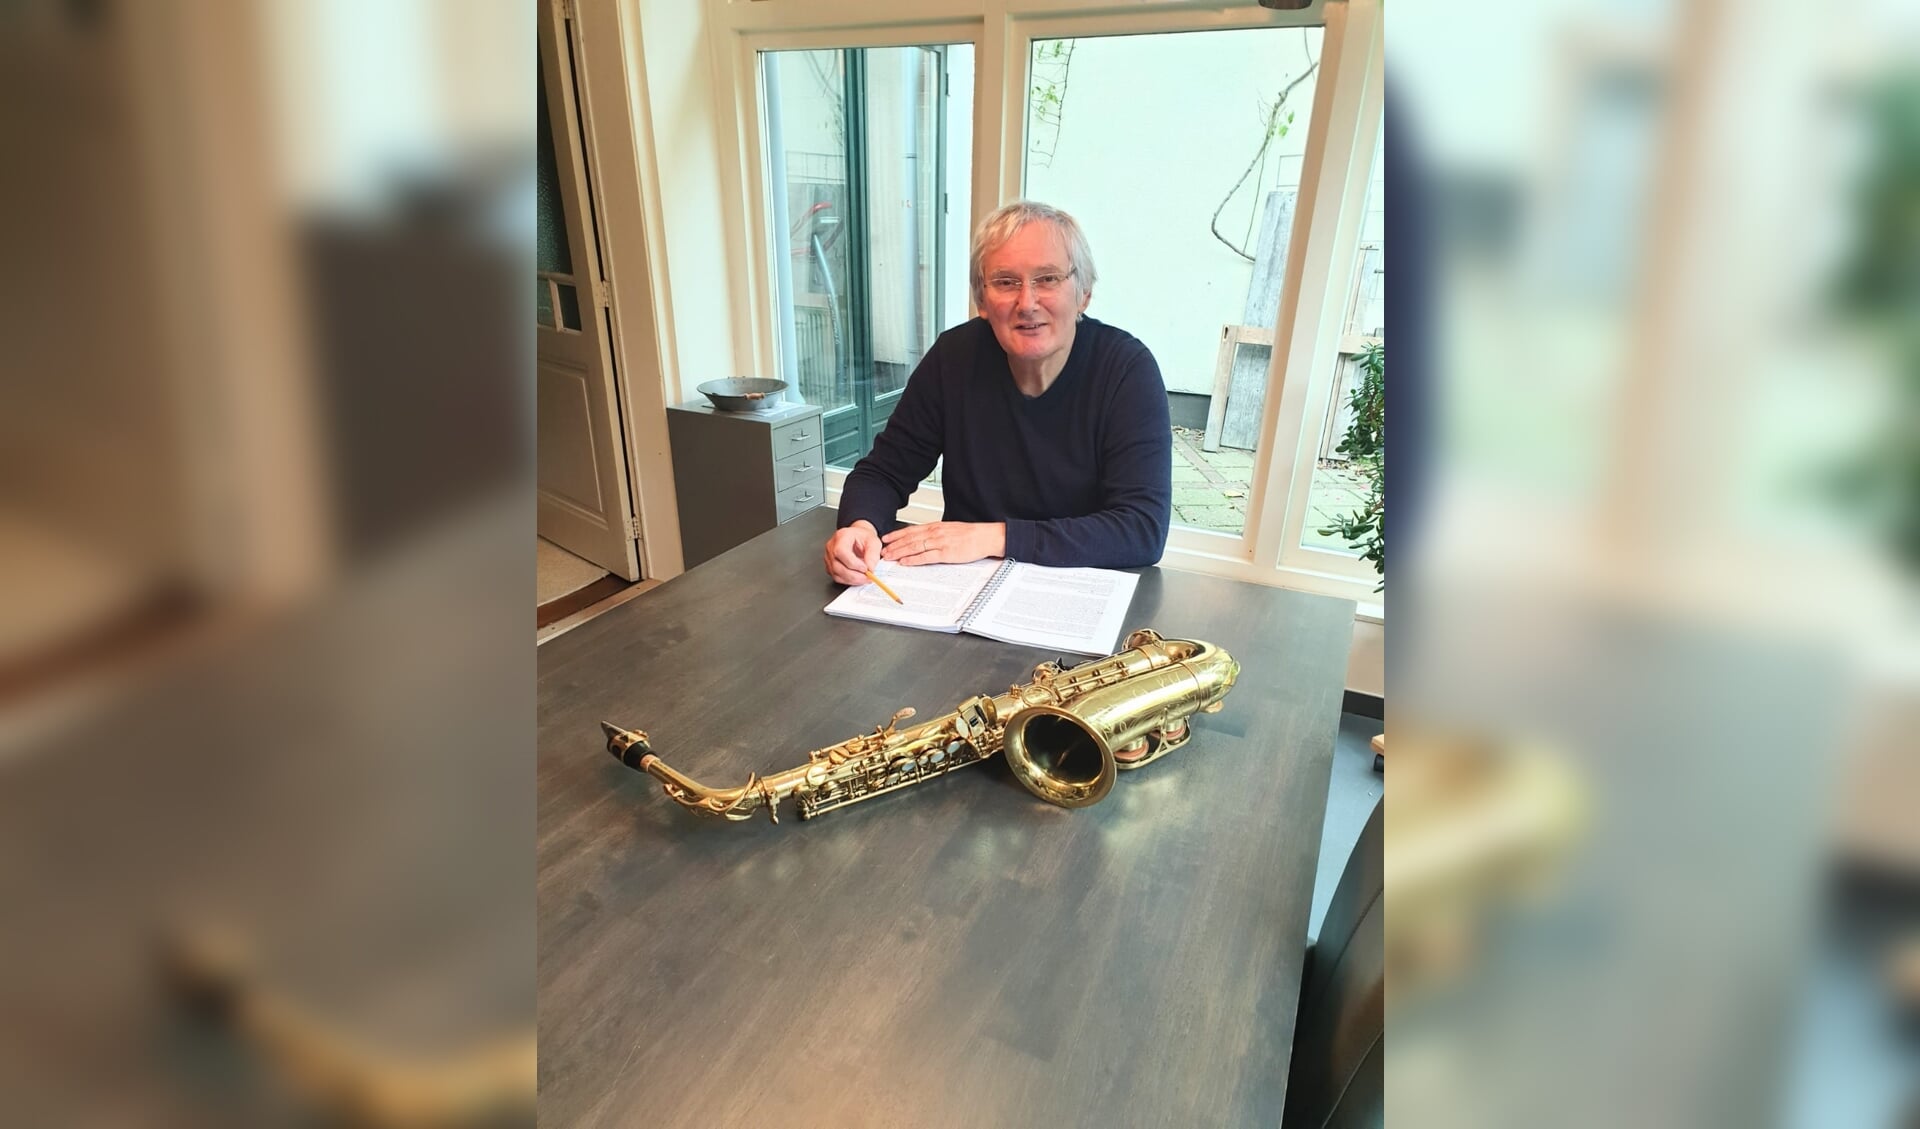 Bennie Waanders, met zijn manuscript en natuurlijk de saxofoon. Foto: Hetty ten Hoopen